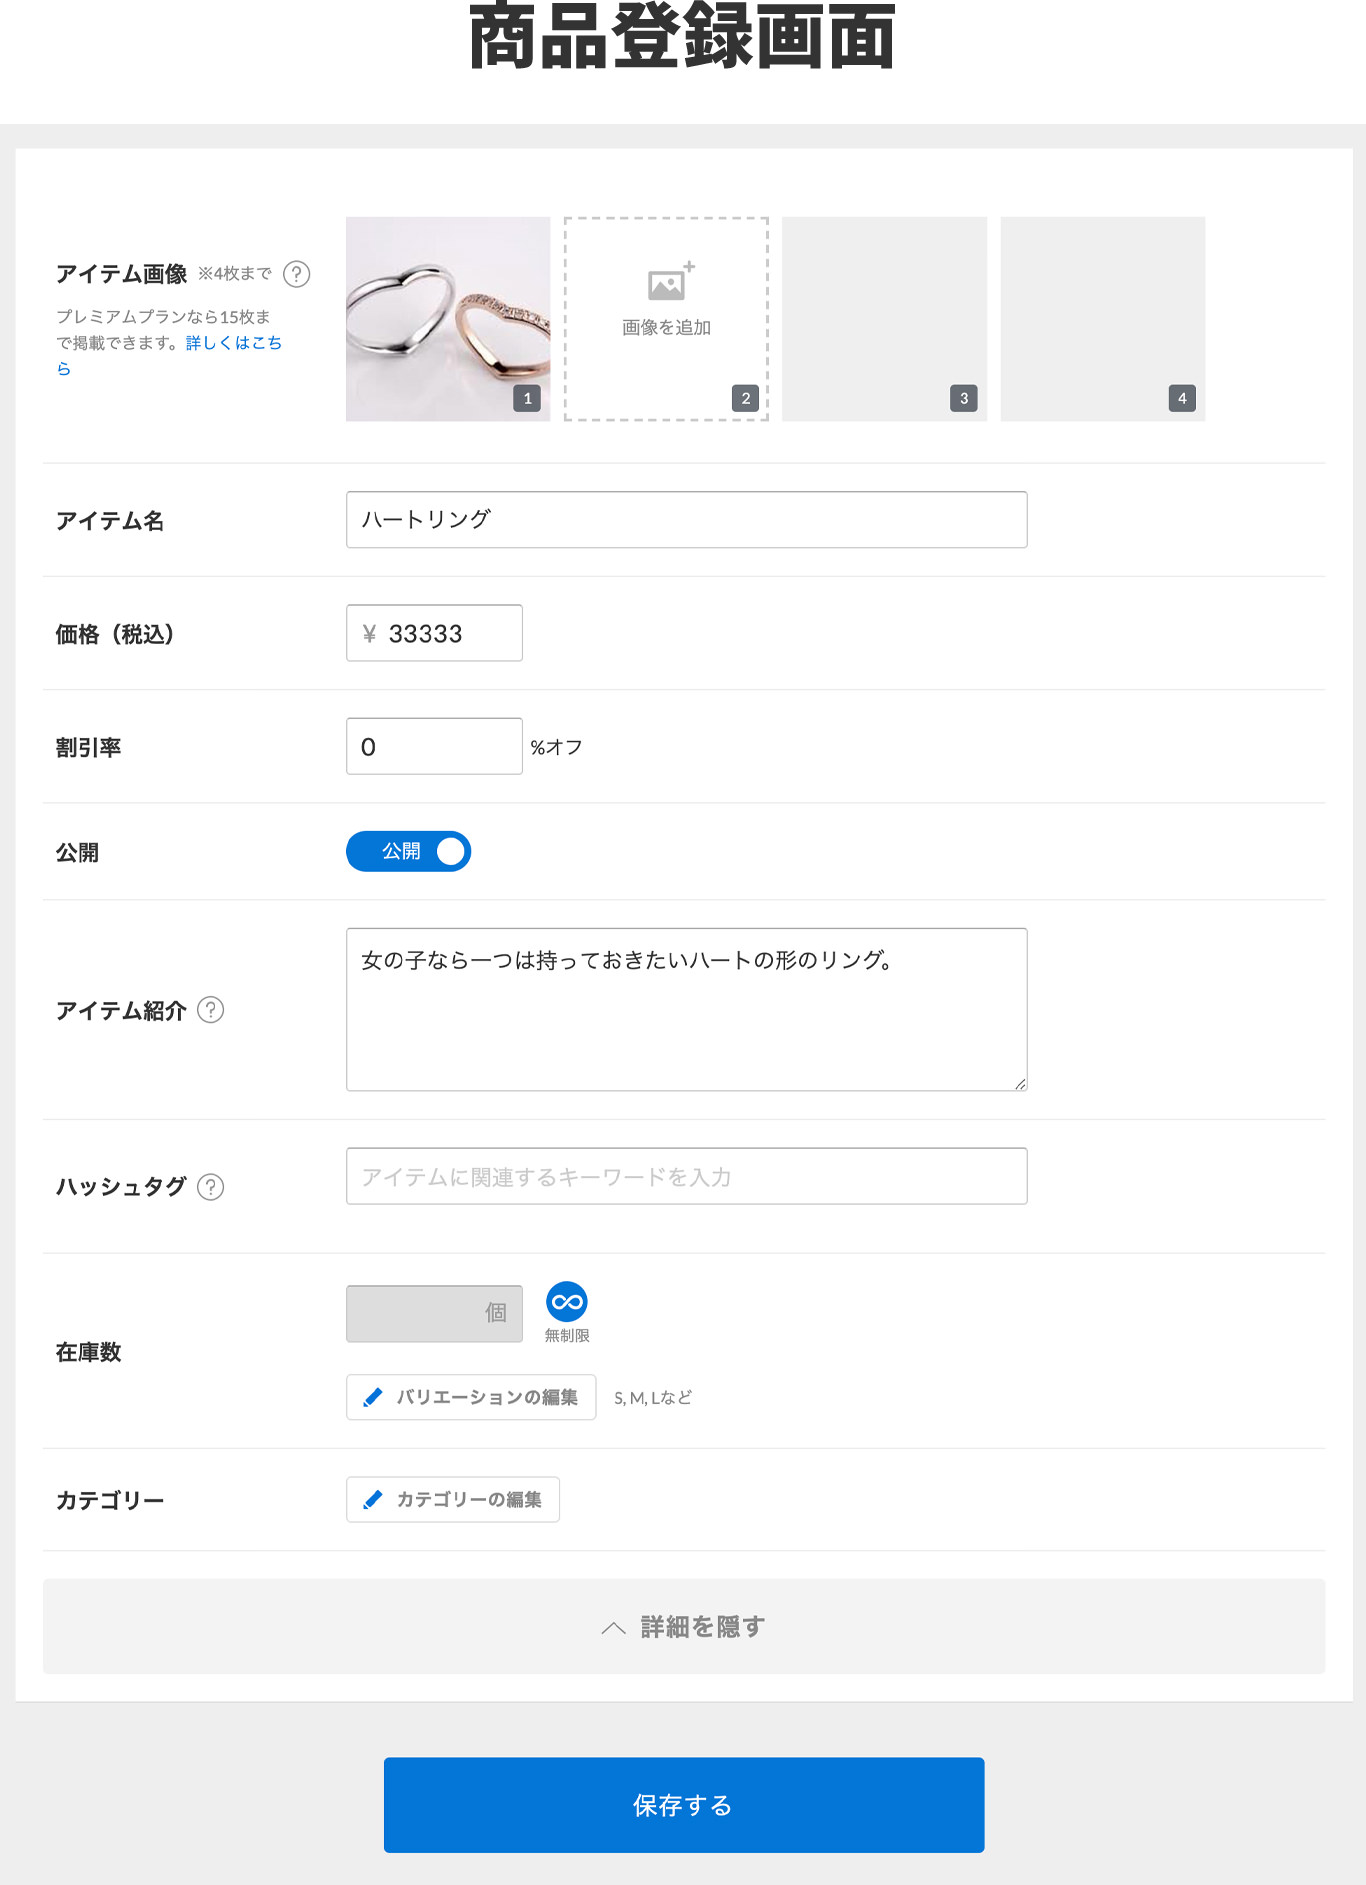 Stores.jp 商品登録画面